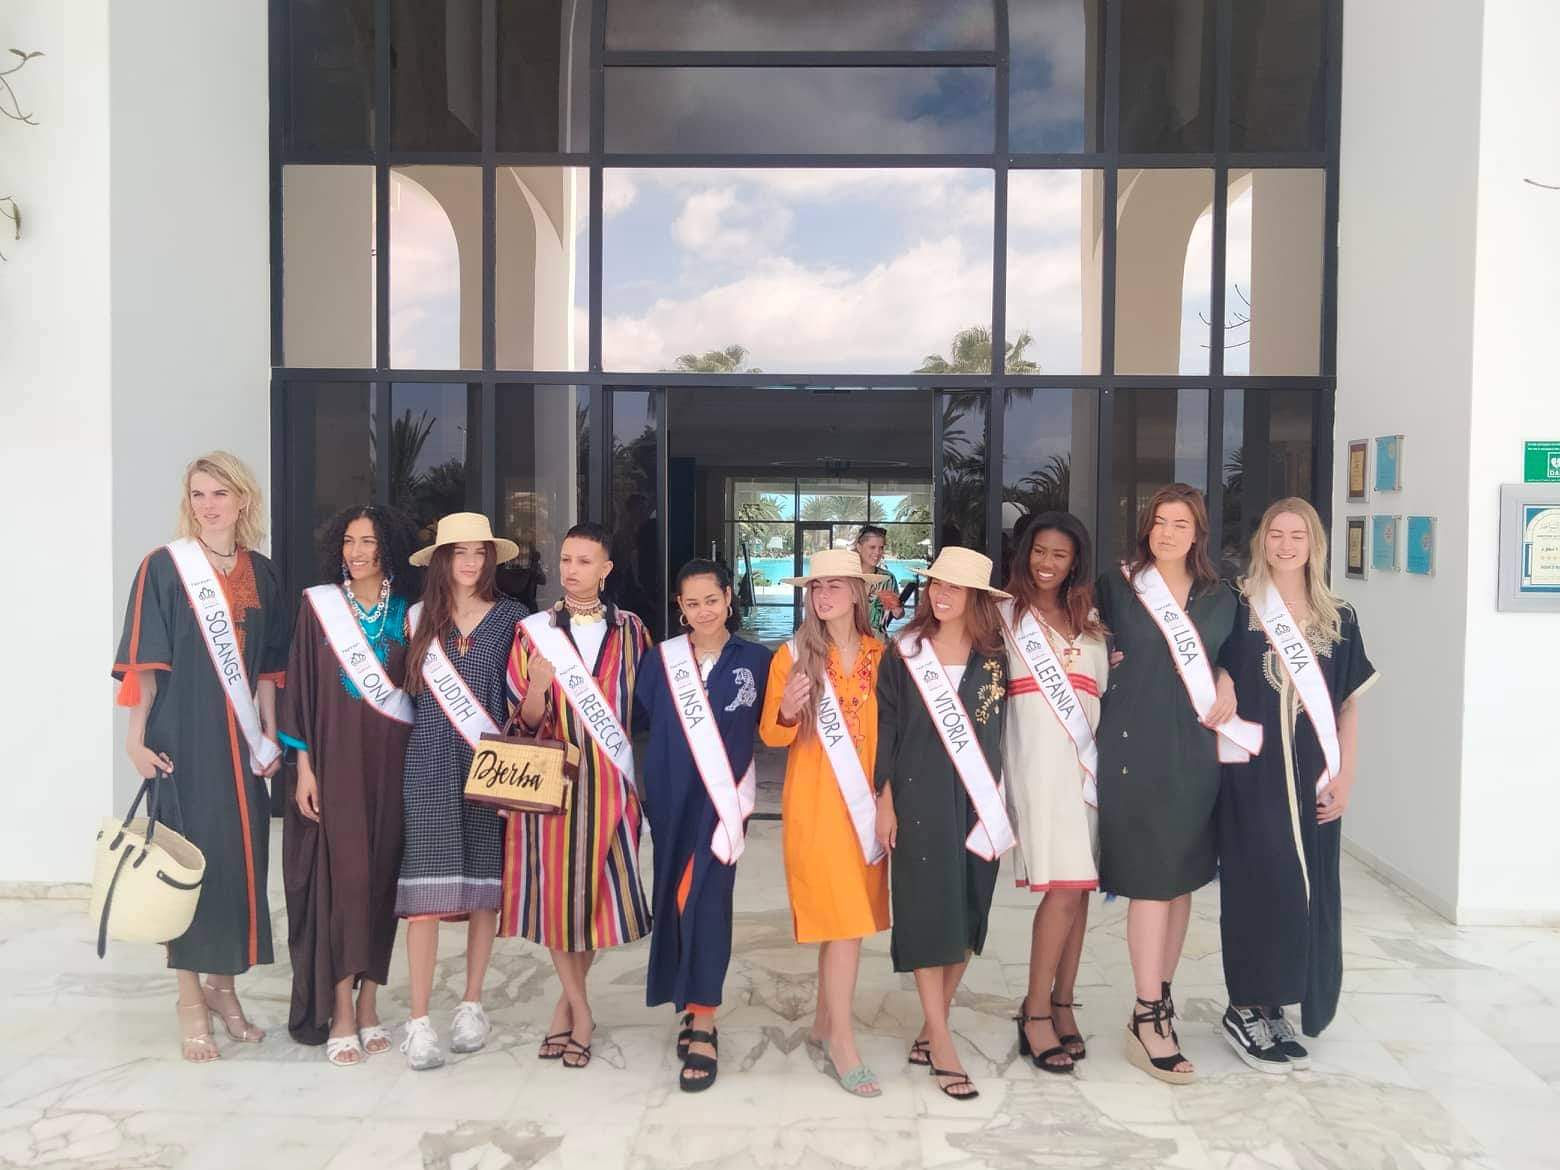  ملكات جمال هولندا بالمنطقة السياحية جربة جرجيس  للترويج  للوجهة التونسية